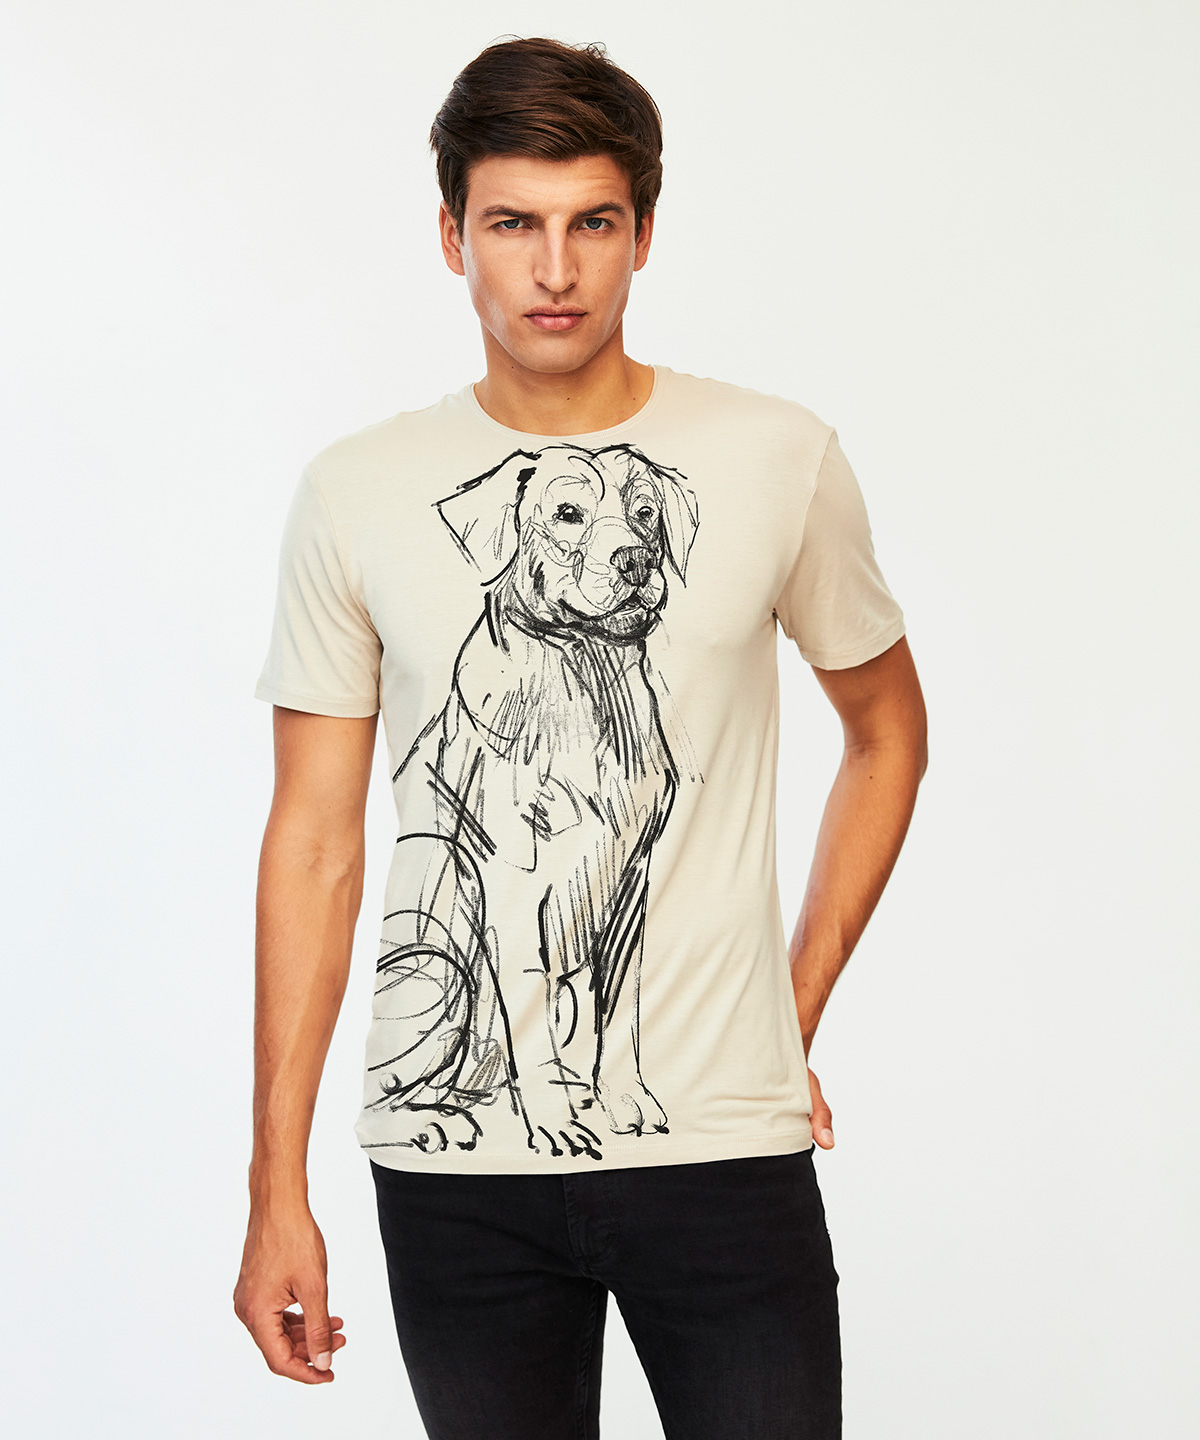 Labrador retriever hummus t-shirt MAN